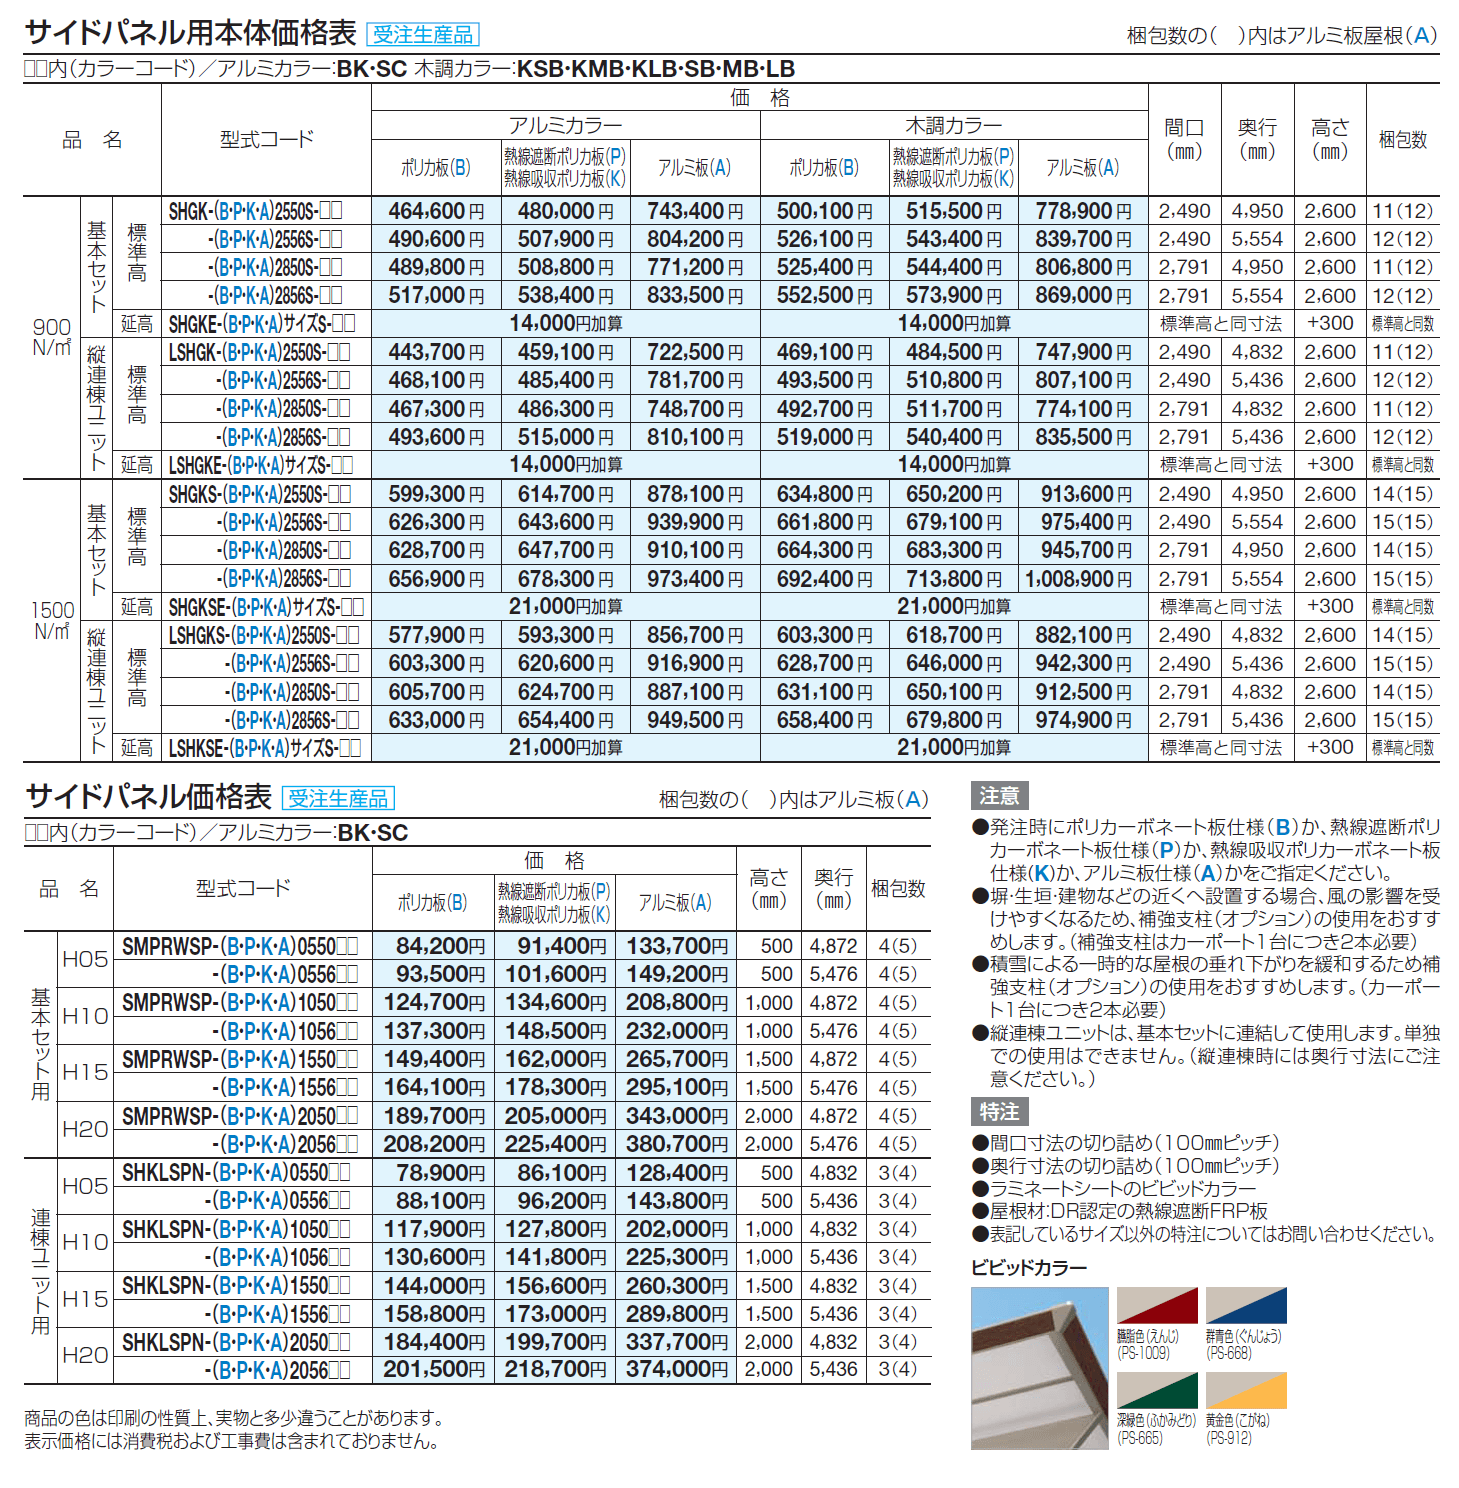 スマートポートHG (片側支持タイプ)(サイドパネル用)1500N/㎡_価格_1